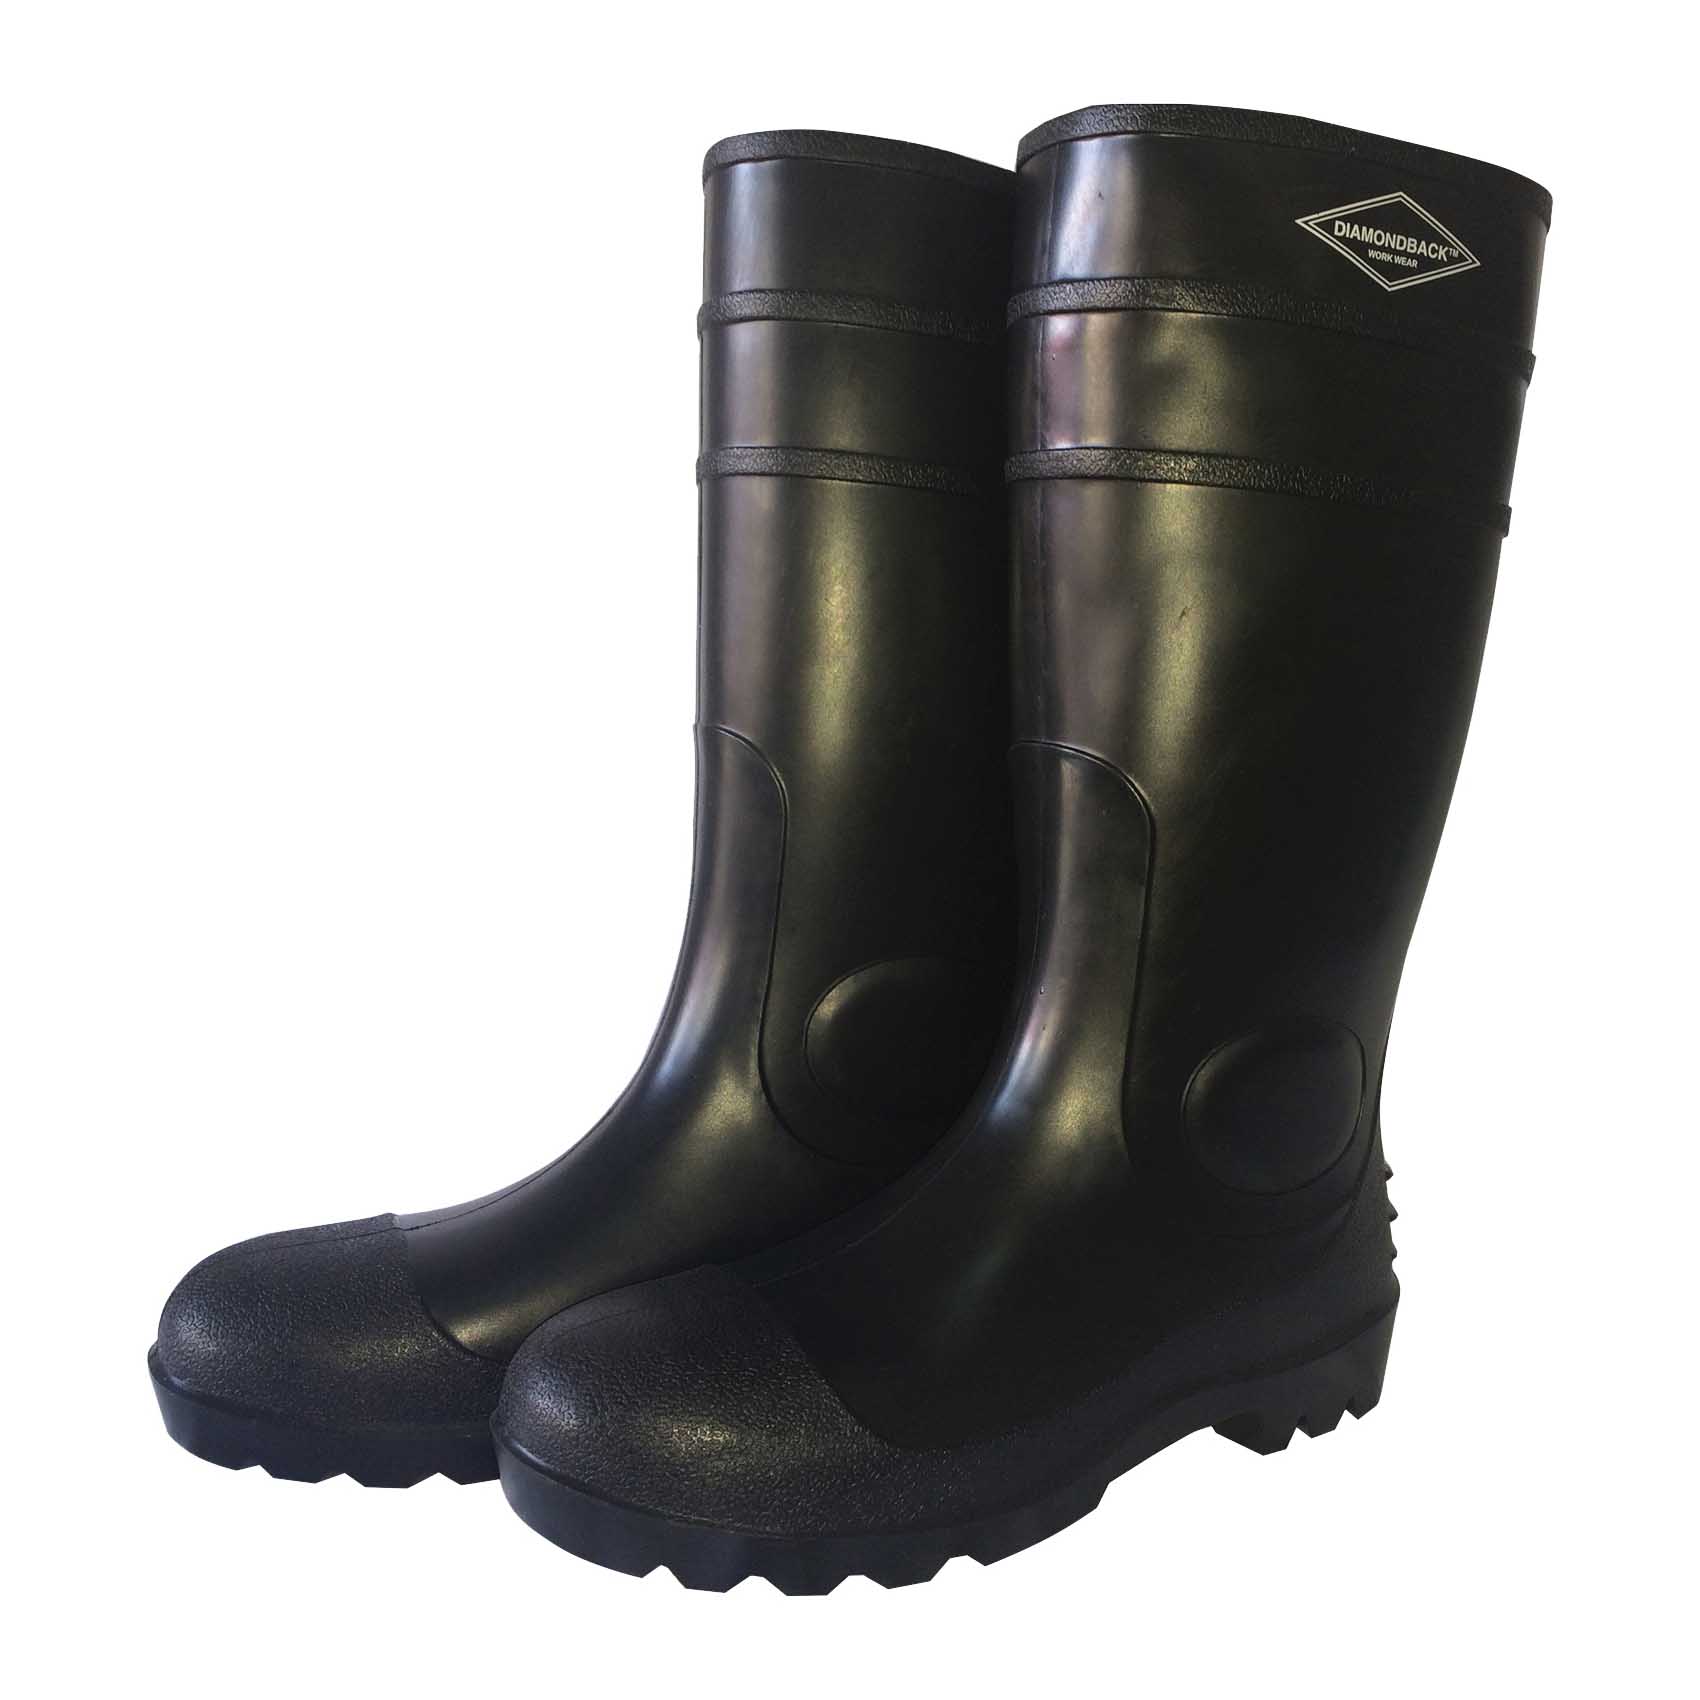 L-G06B13 Knee Boots, 13, Black, PVC Upper